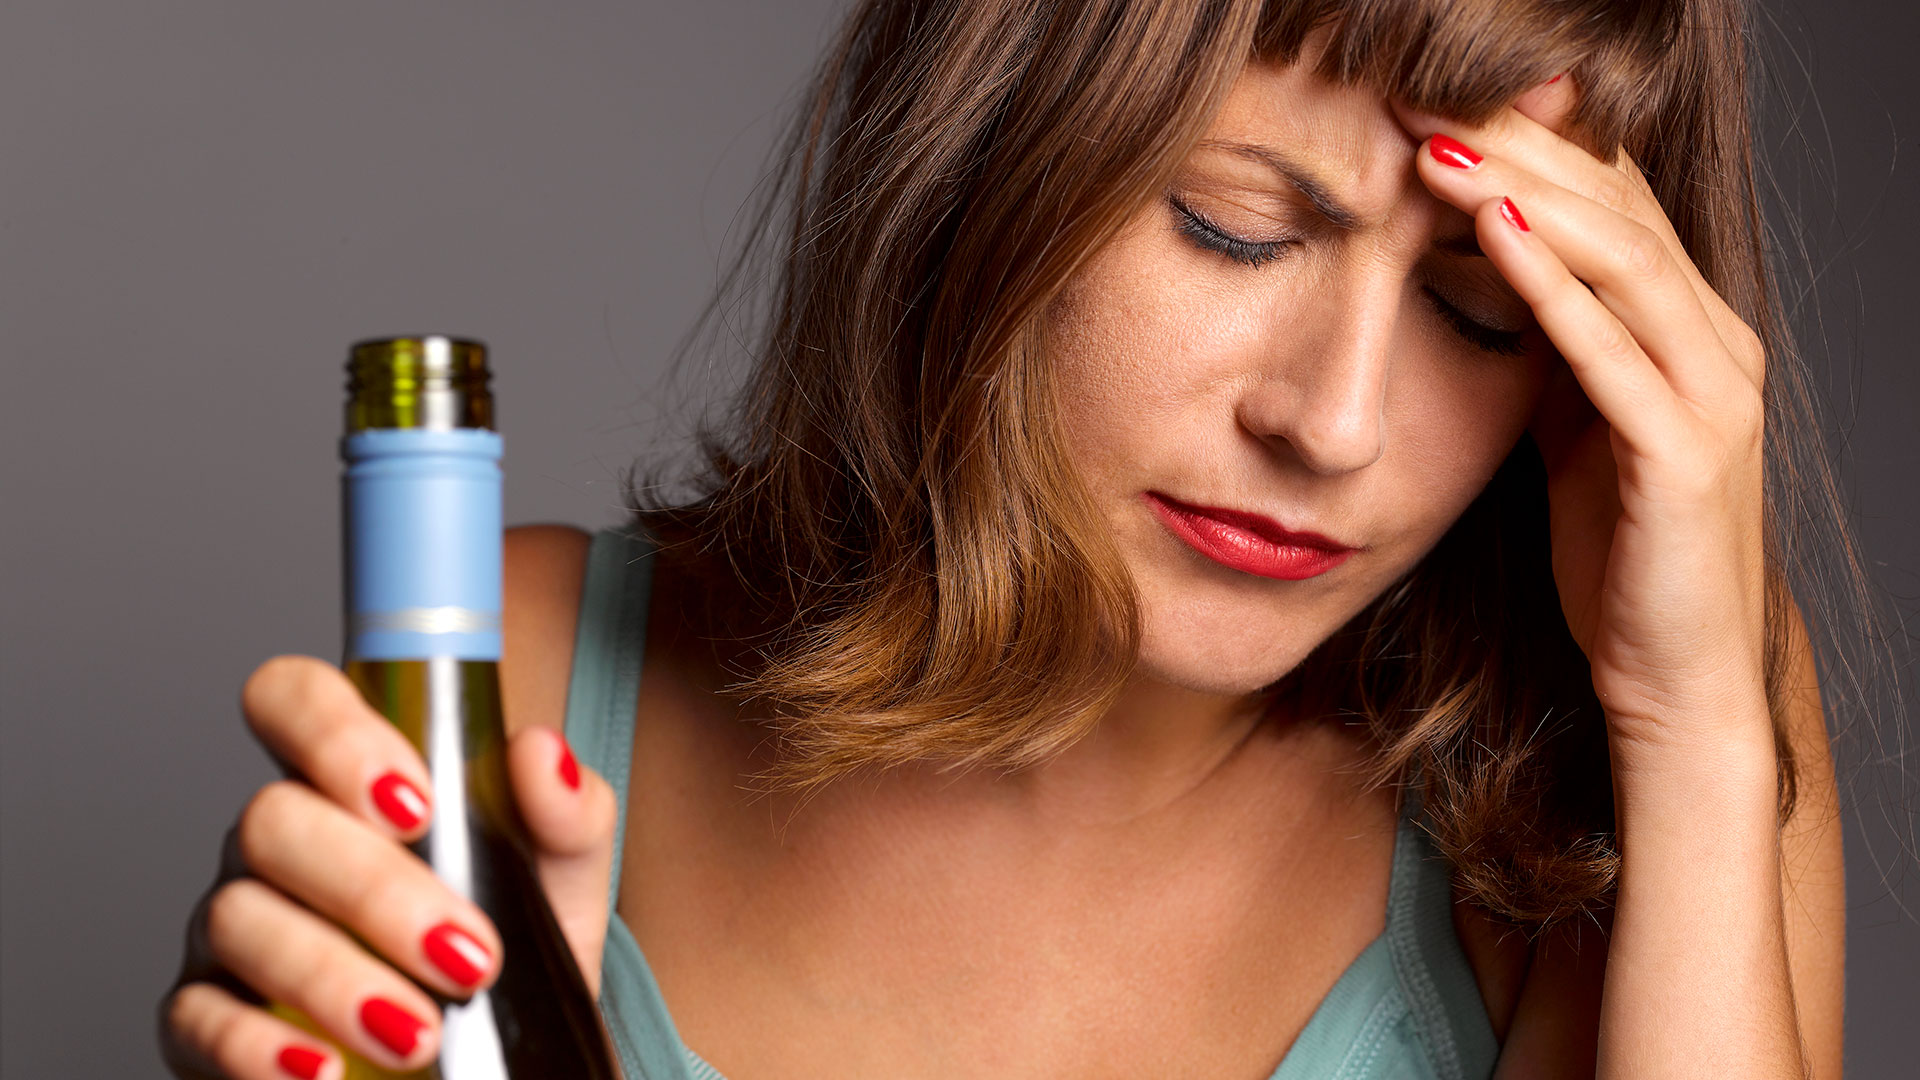 El alcohol también está asociado a más casos de trastornos cardiovasculares, hipertensión y ataques cerebrovasculares (Getty Images)